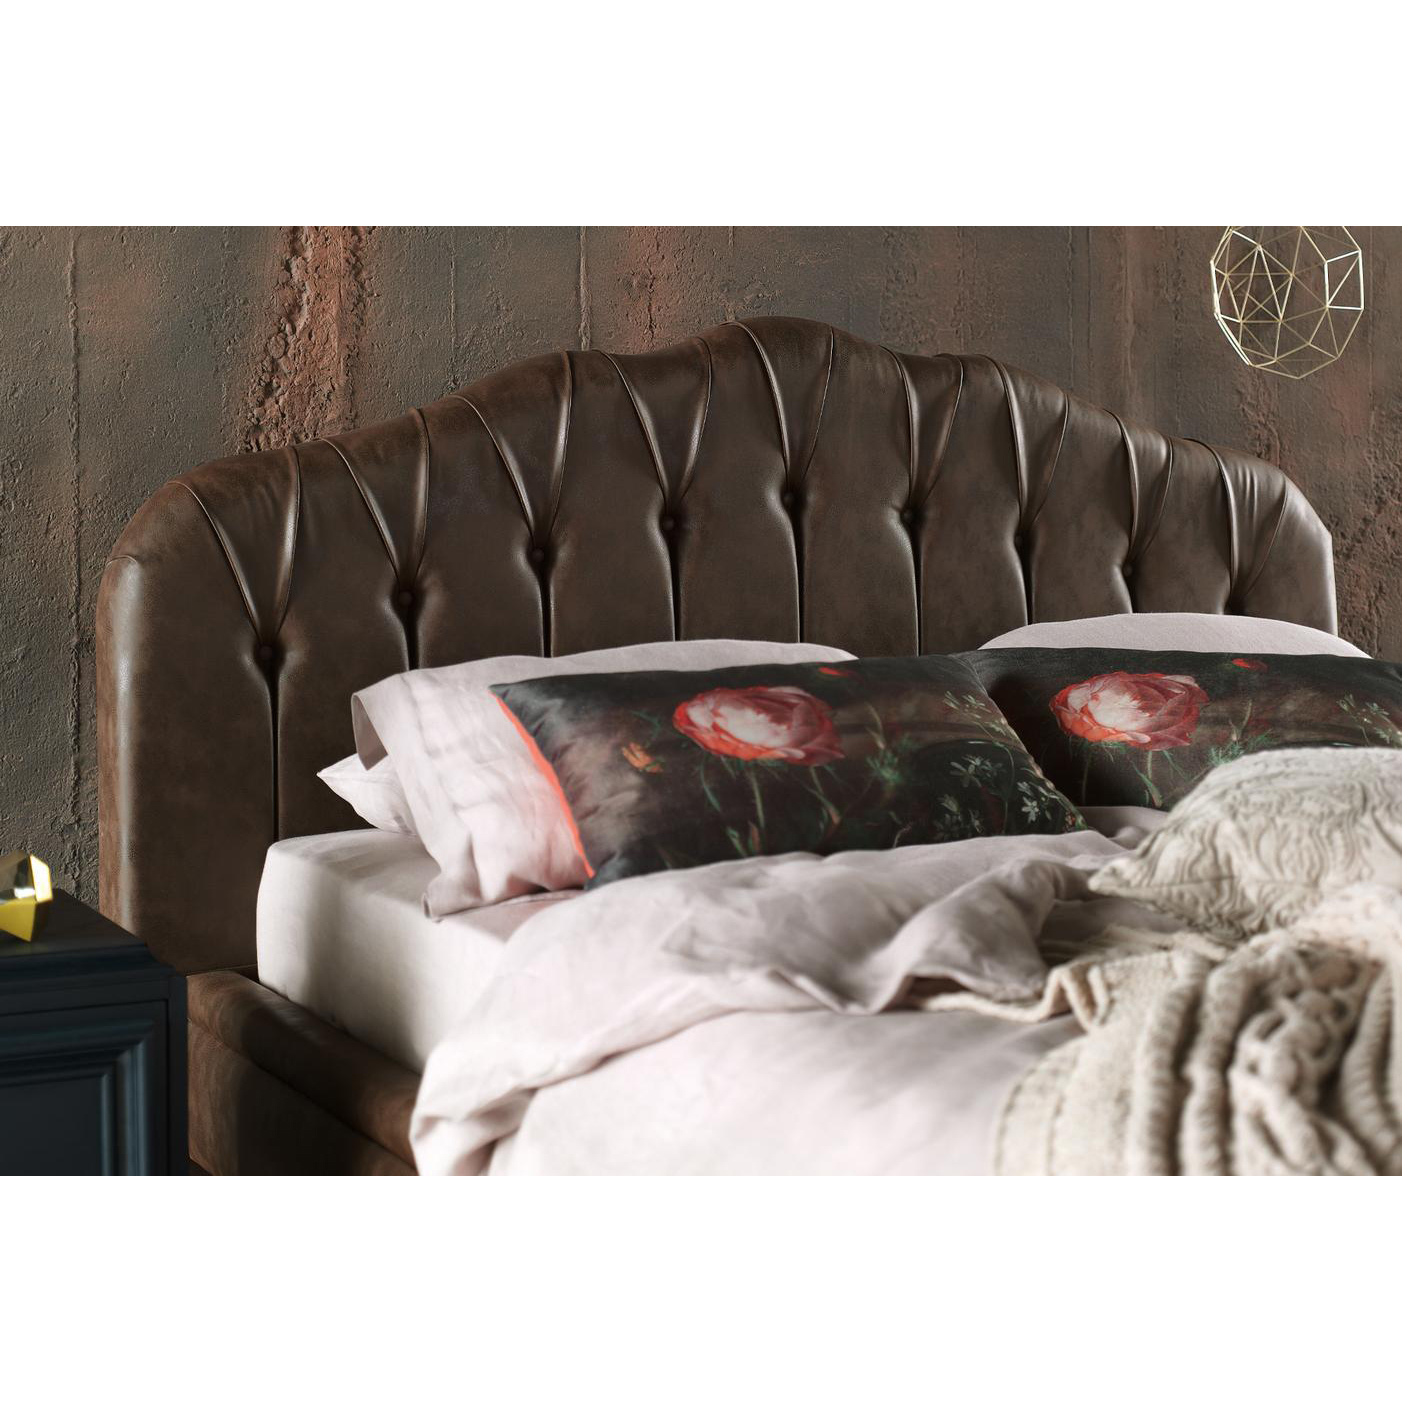 Кровать Enza Home Elegante,160х200, цвет коричневый 308 (EH20179)EH20179